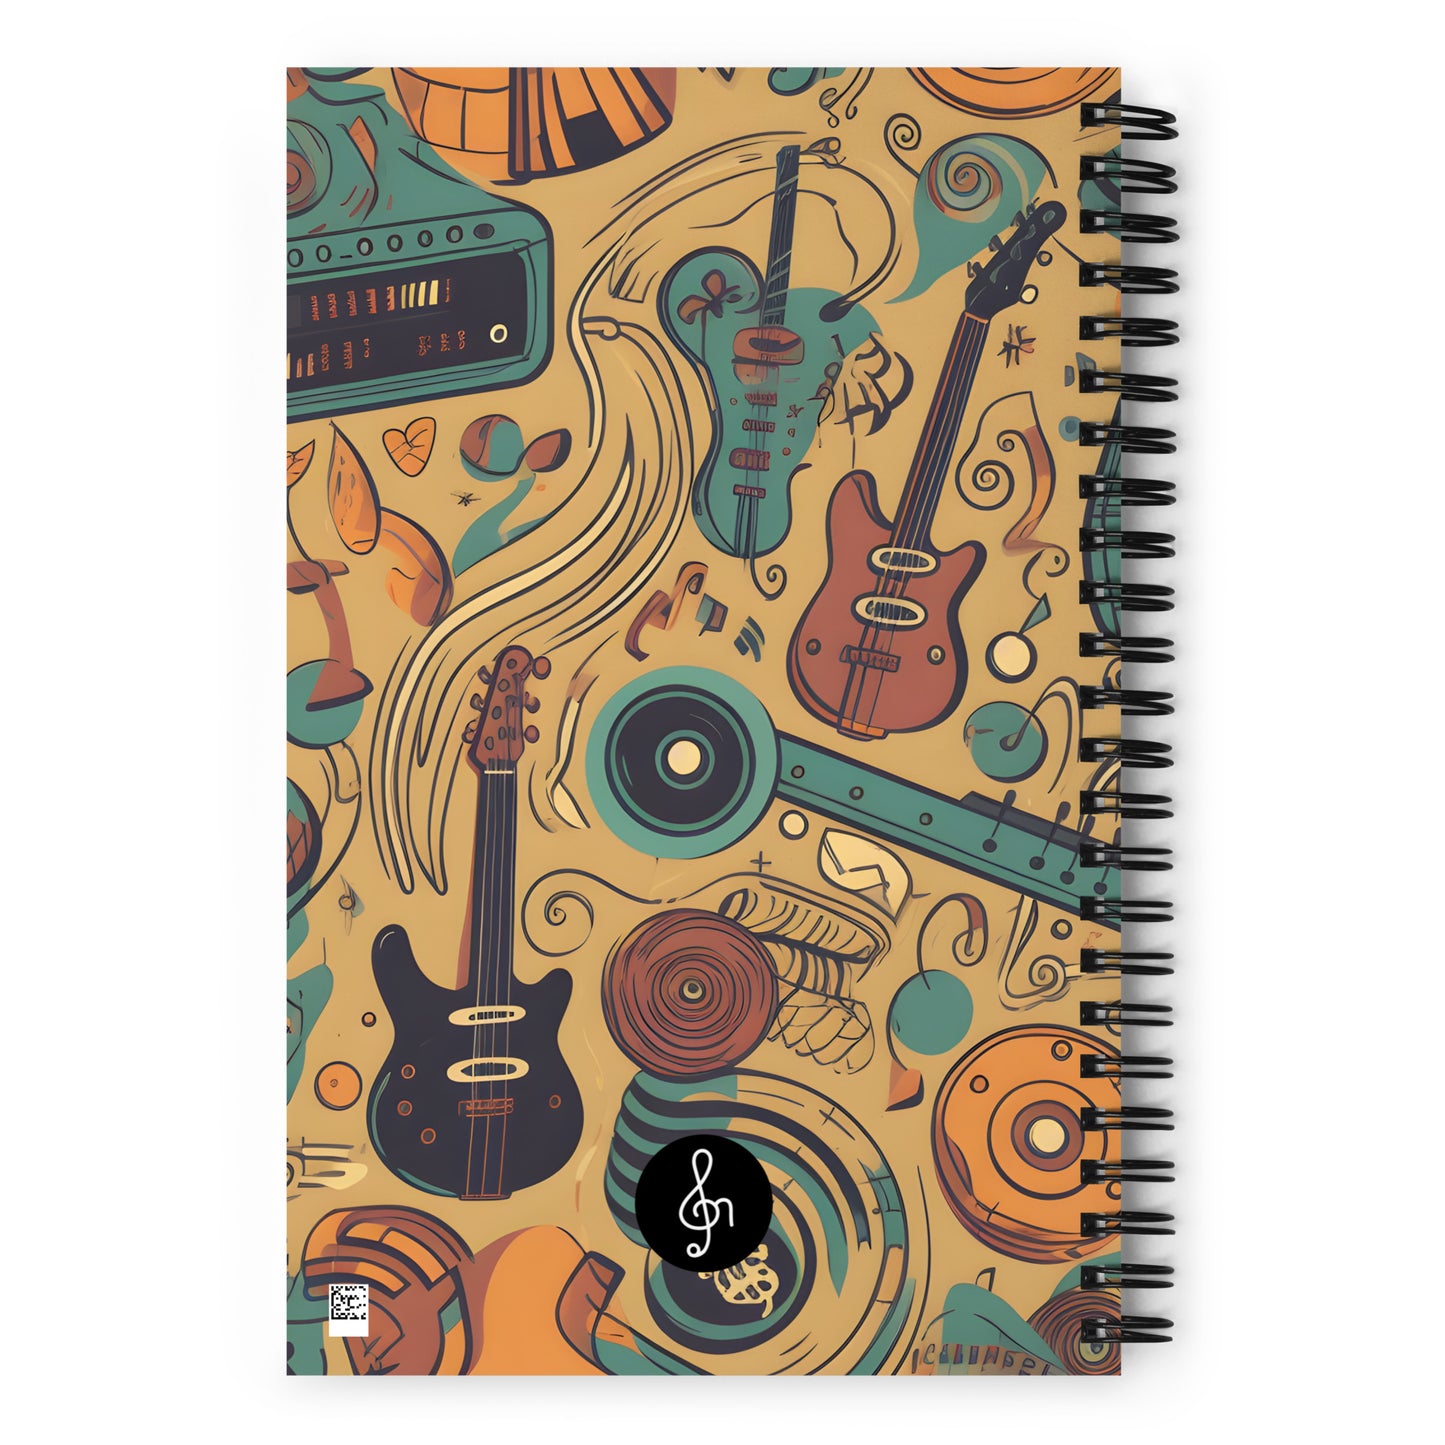 Spiral Notebook Retro 5